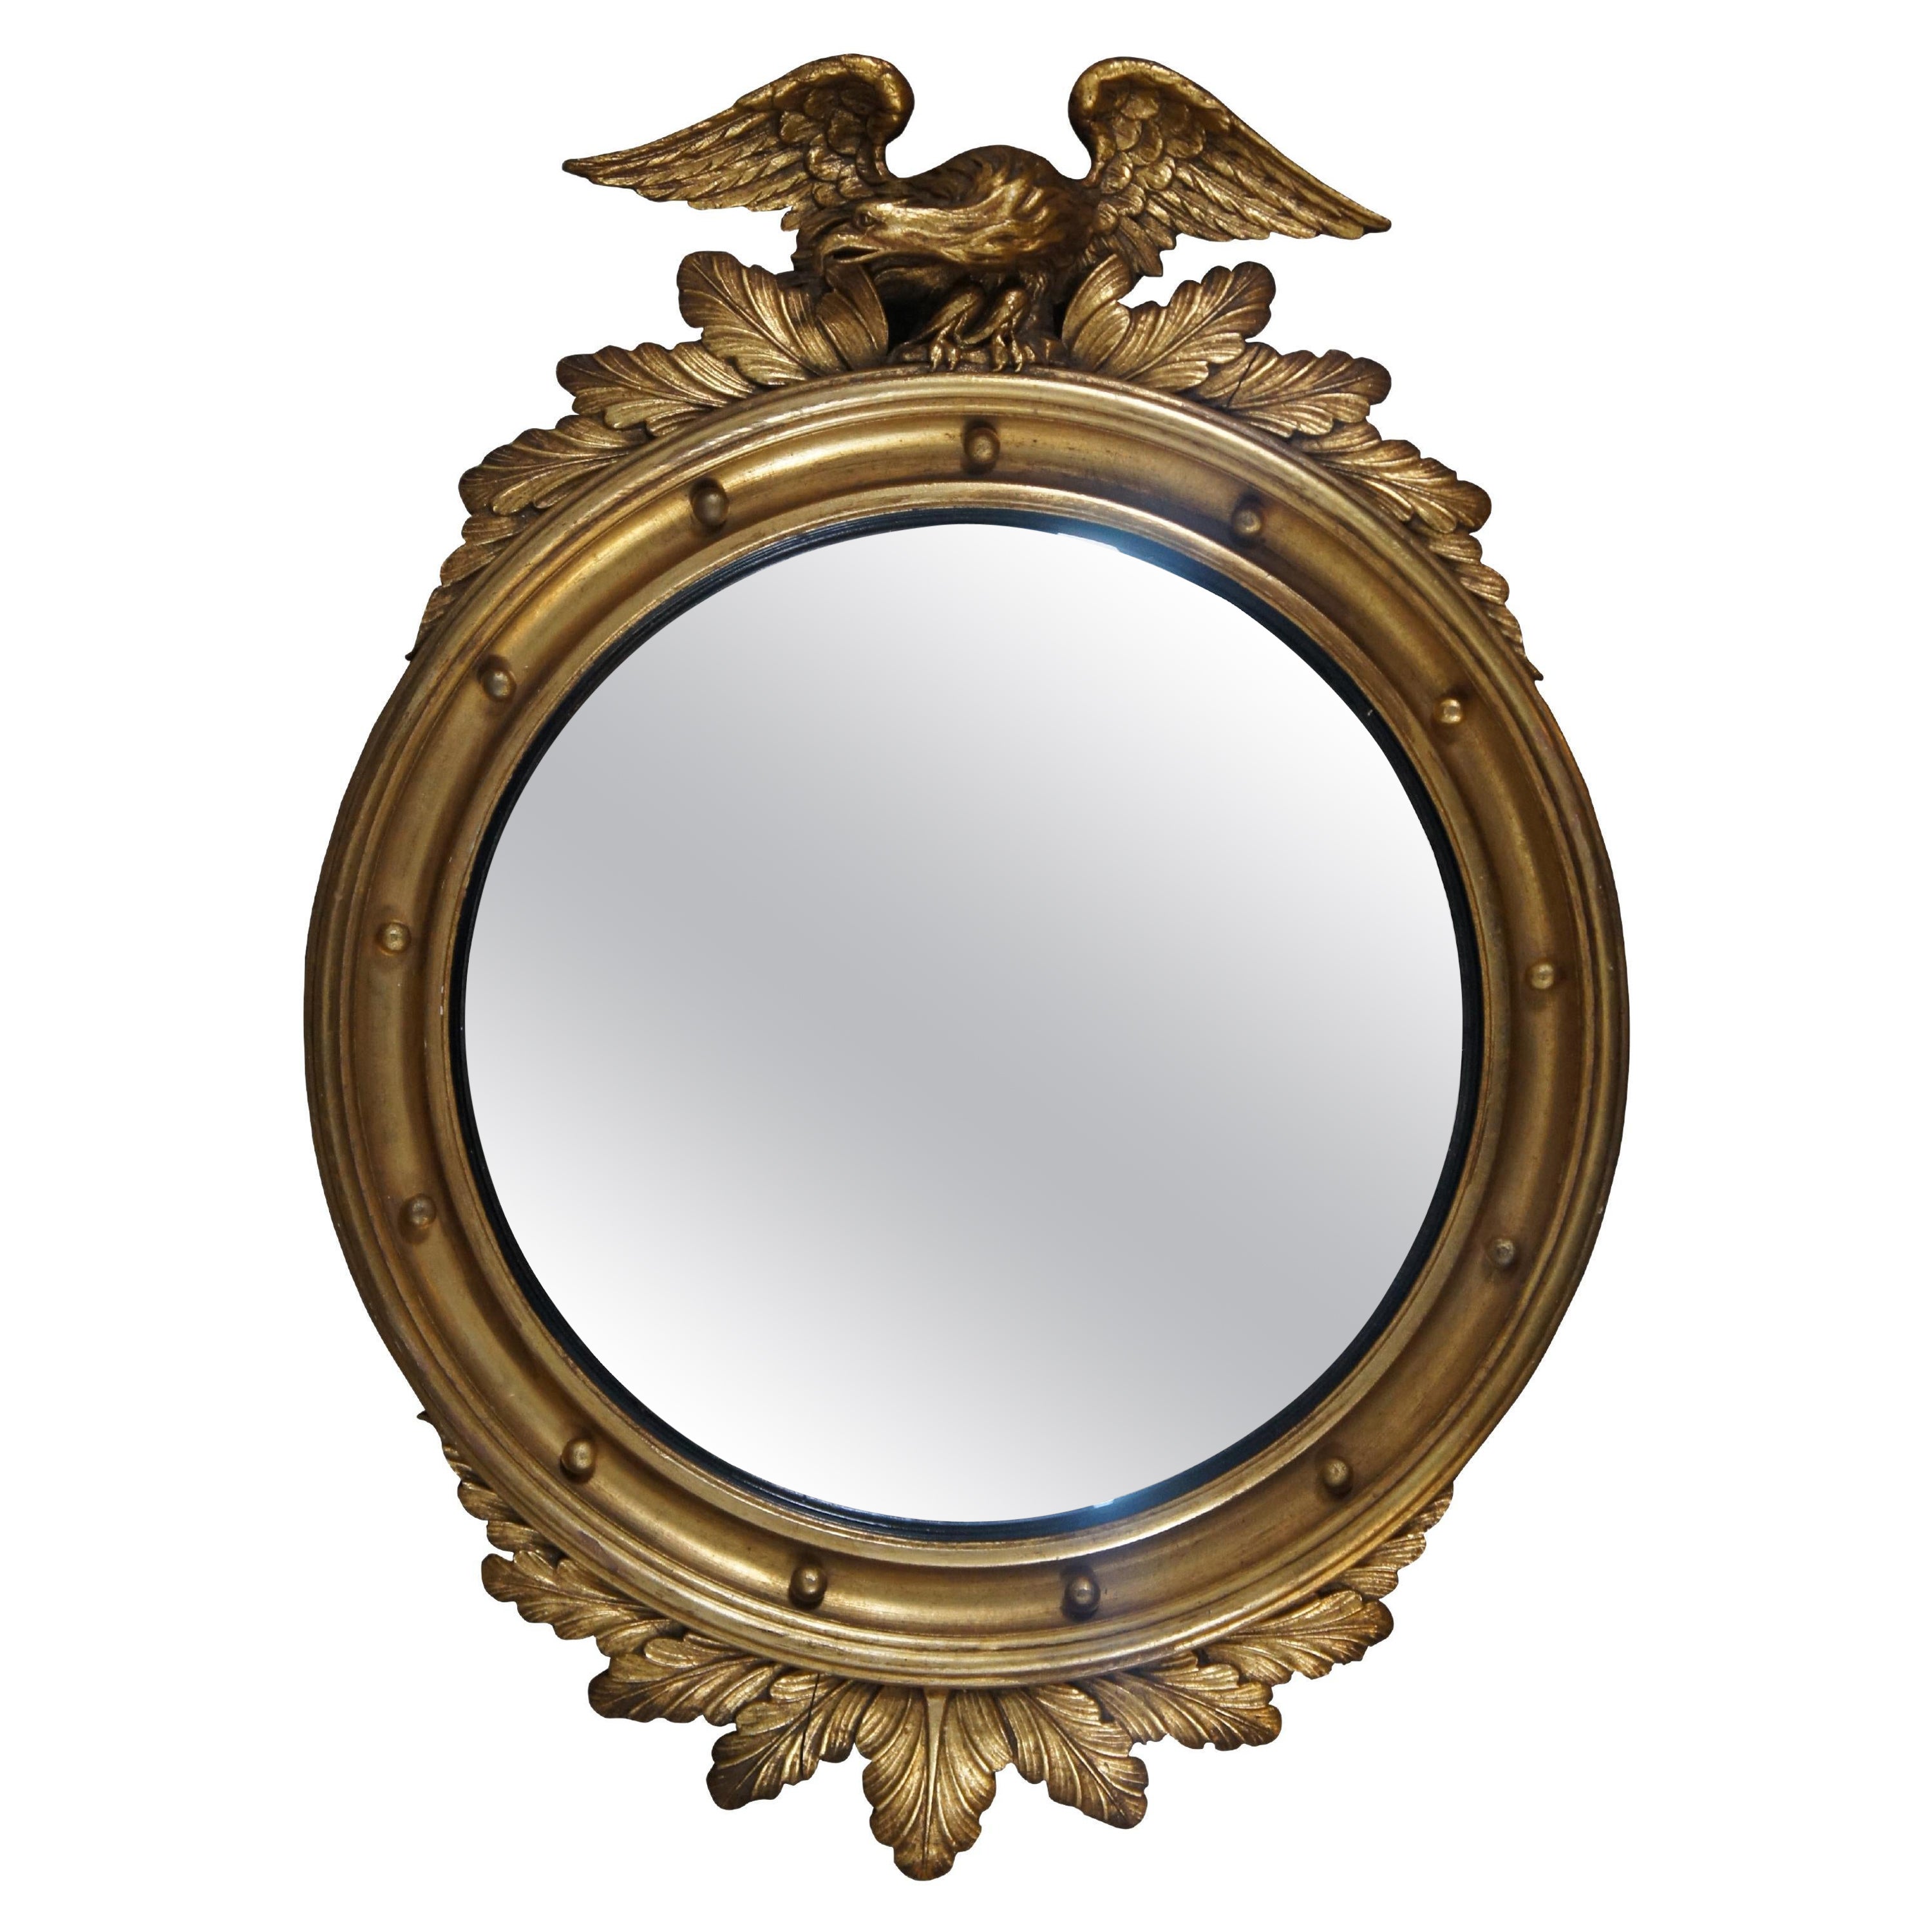 Antique 19ème siècle Federal Giltwood Convex Bullseye Eagle Acanthus Mirror 31" (miroir en bois doré convexe à œil de bœuf)